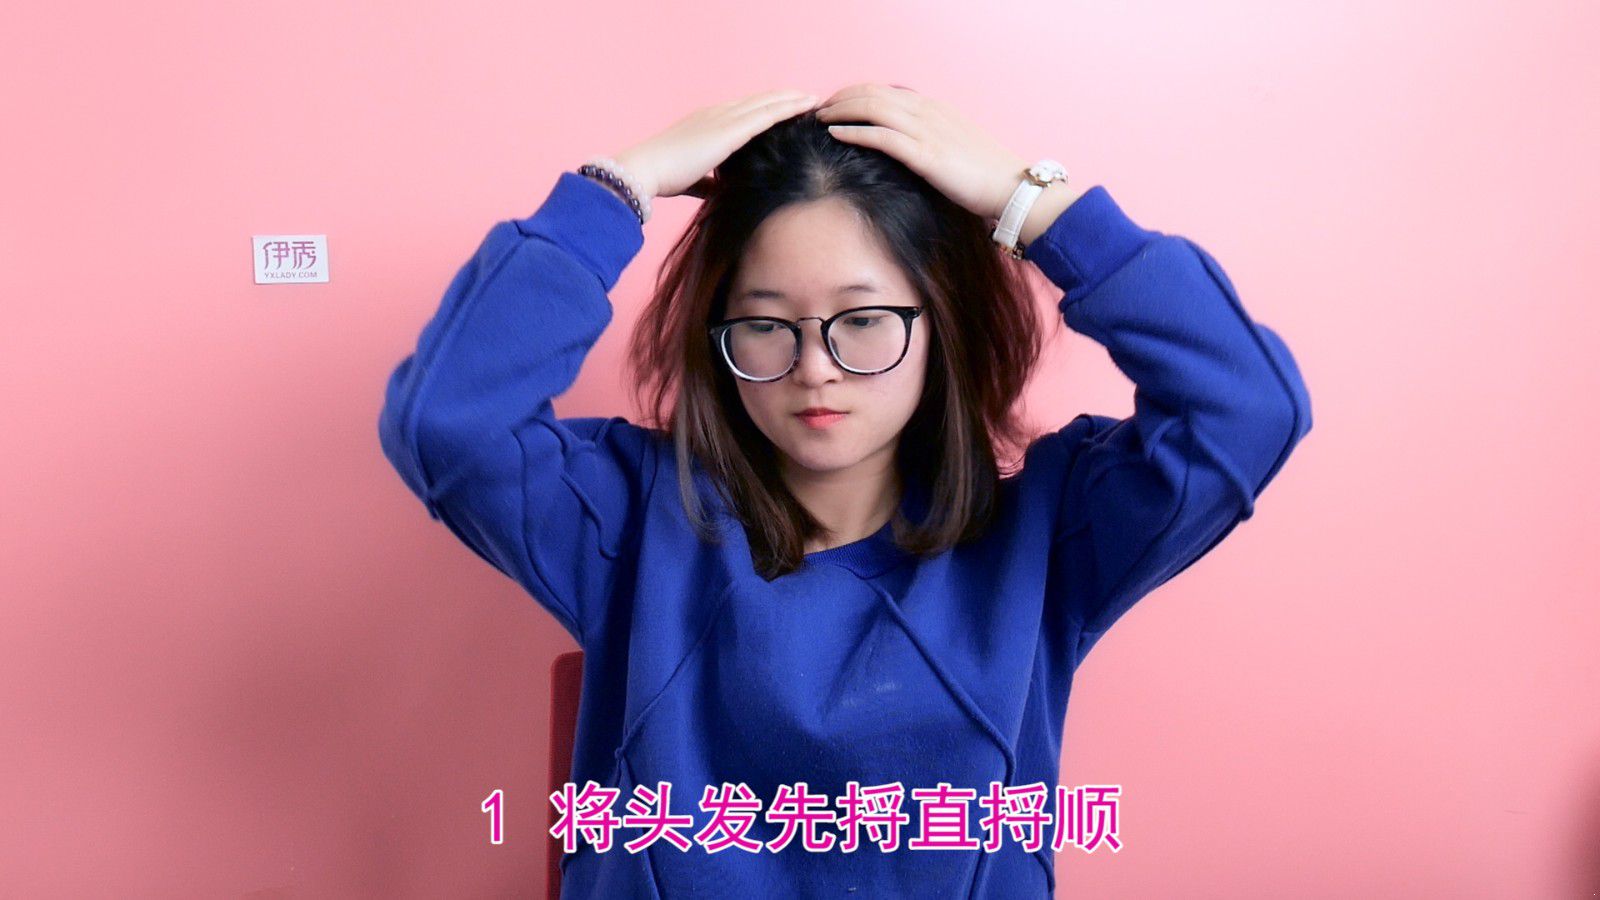 头发怎么扎好看 超简易方法传授_伊秀视频|yxlady.com